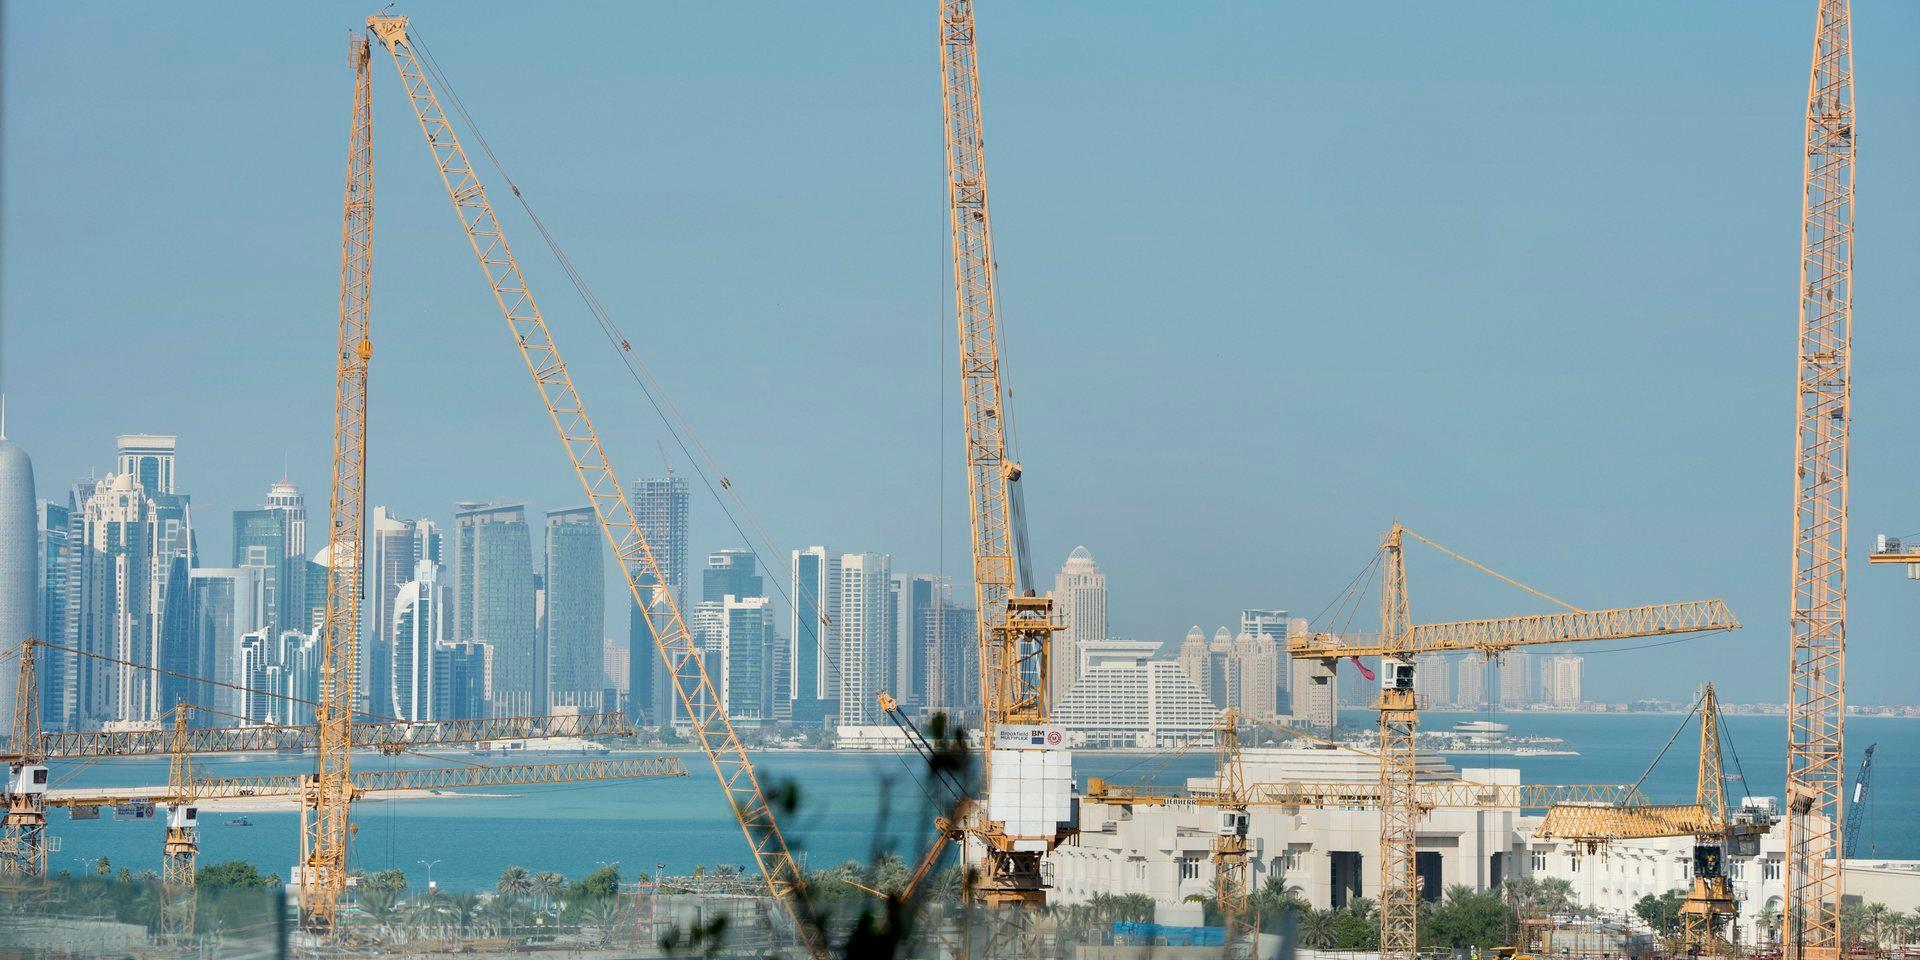 Tusentals gästarbetare har dött i samband med byggandet av arenorna inför fotbolls-VM i Qatar nästa år.